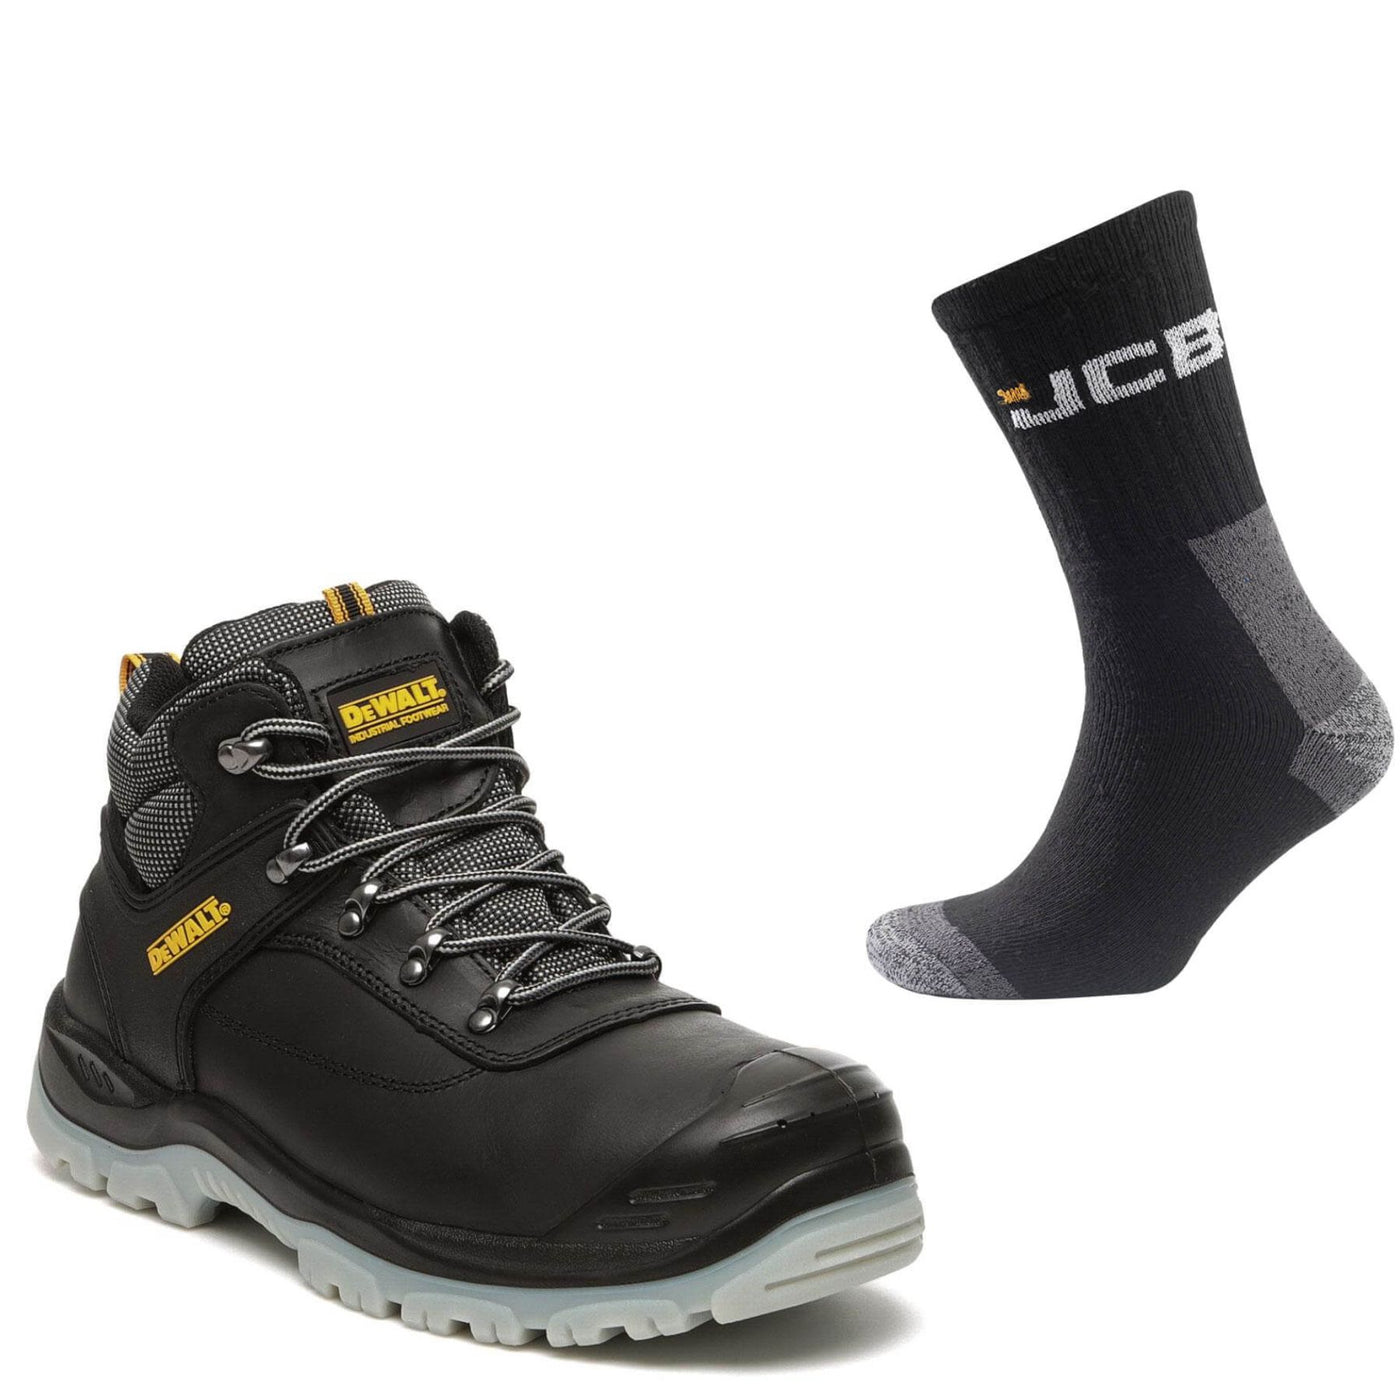 DeWalt Laser Special Offer Pack - DeWalt Laser Black Safety Hiker Boots + 3 Pairs Work Socks